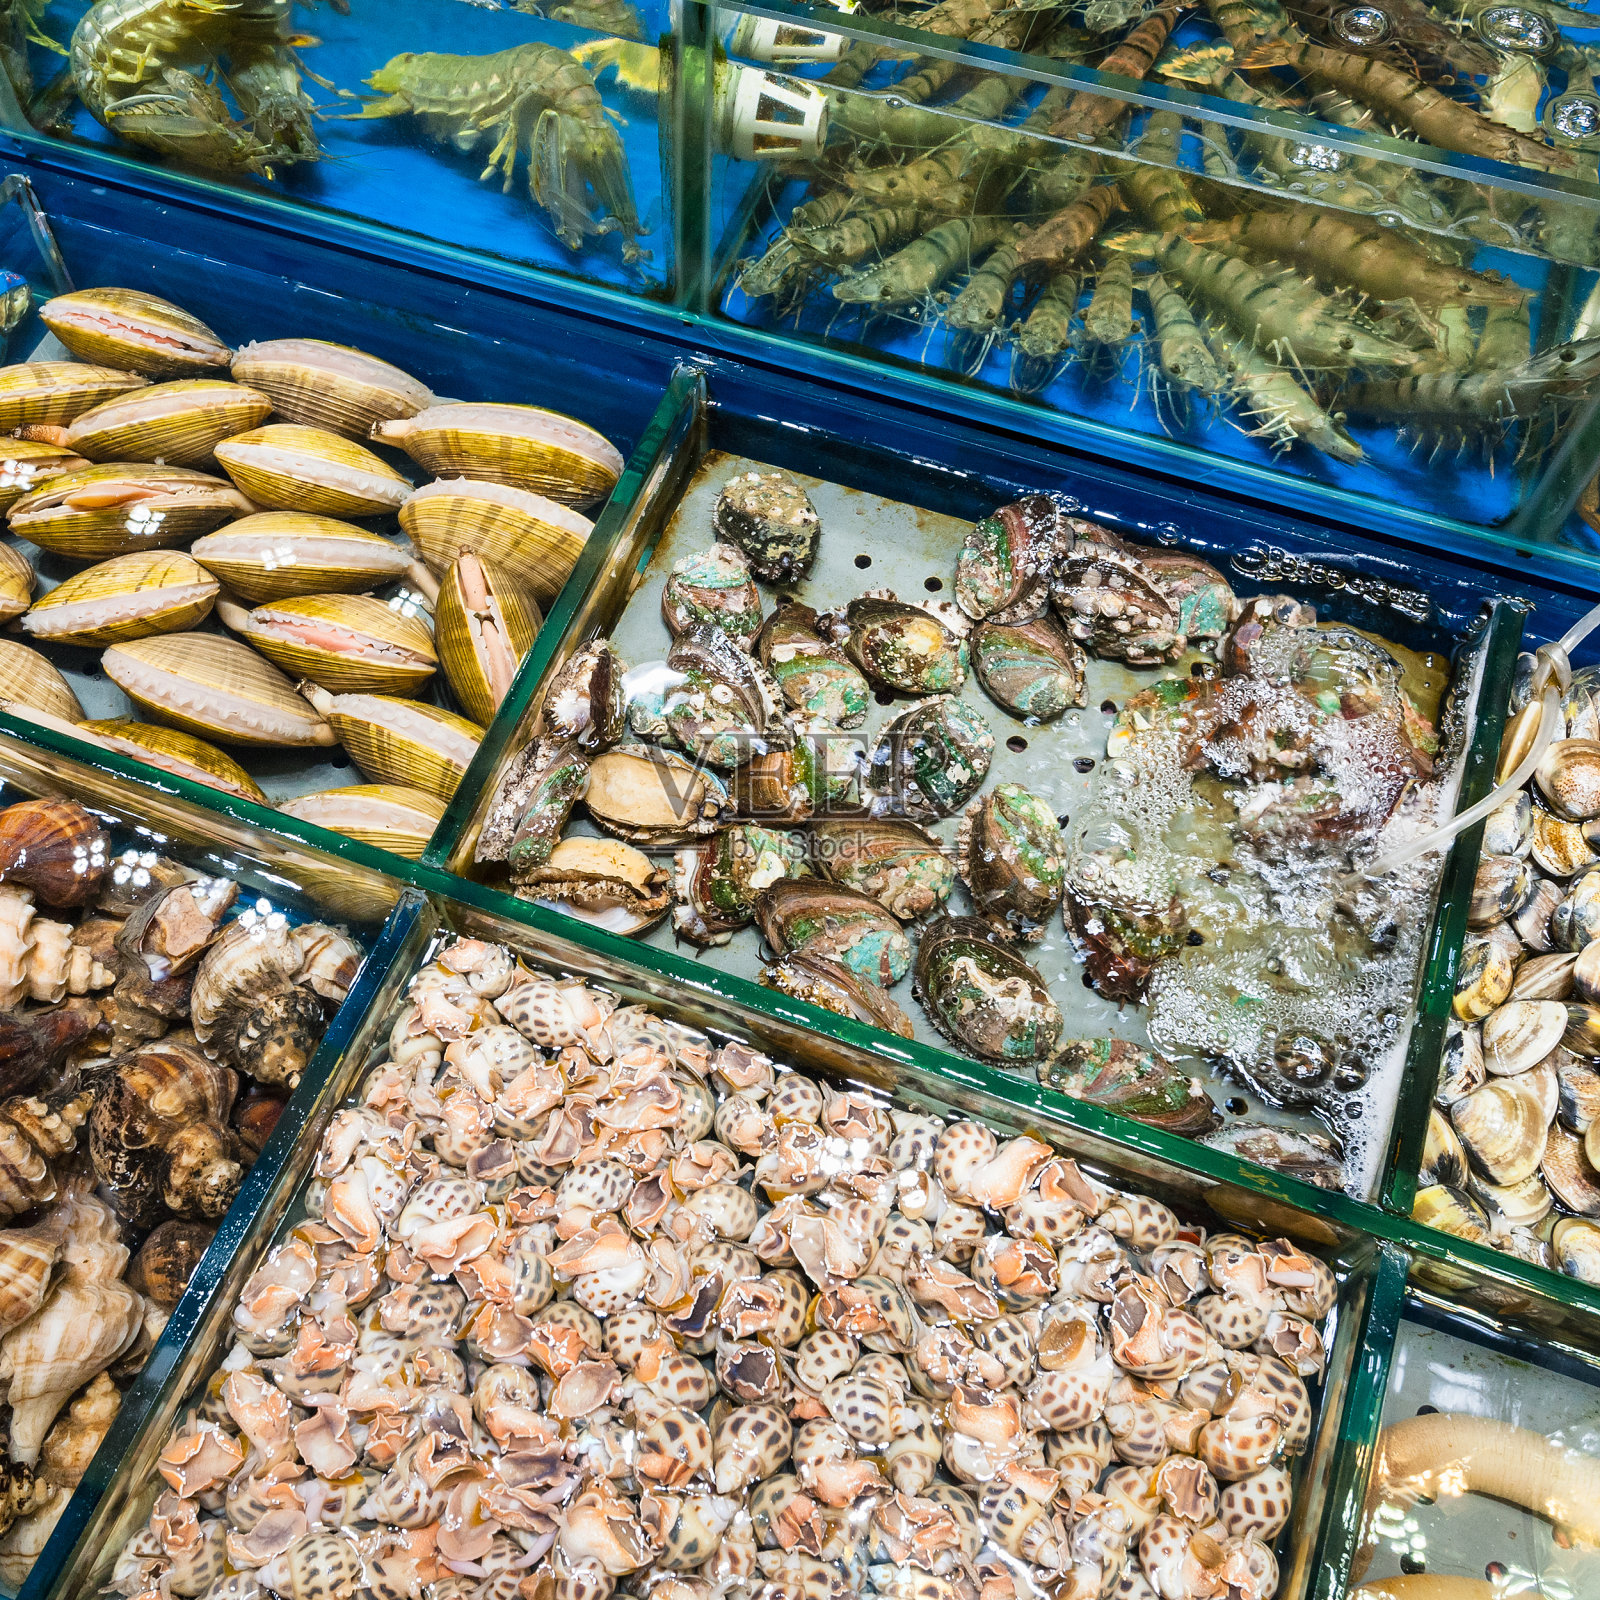 广州鱼市的蛤蜊和对虾照片摄影图片